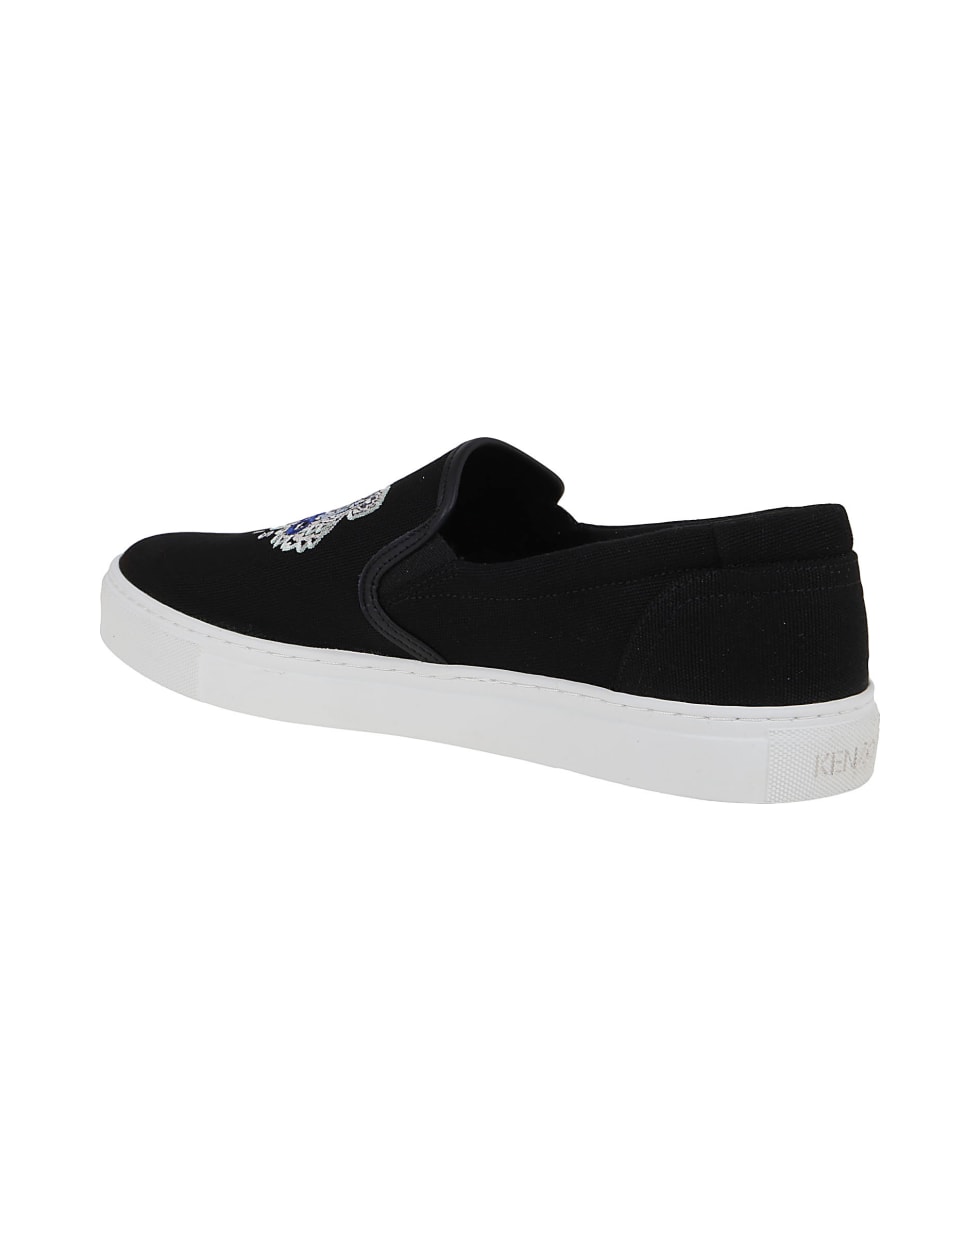 Kenzo Sneakers - Black